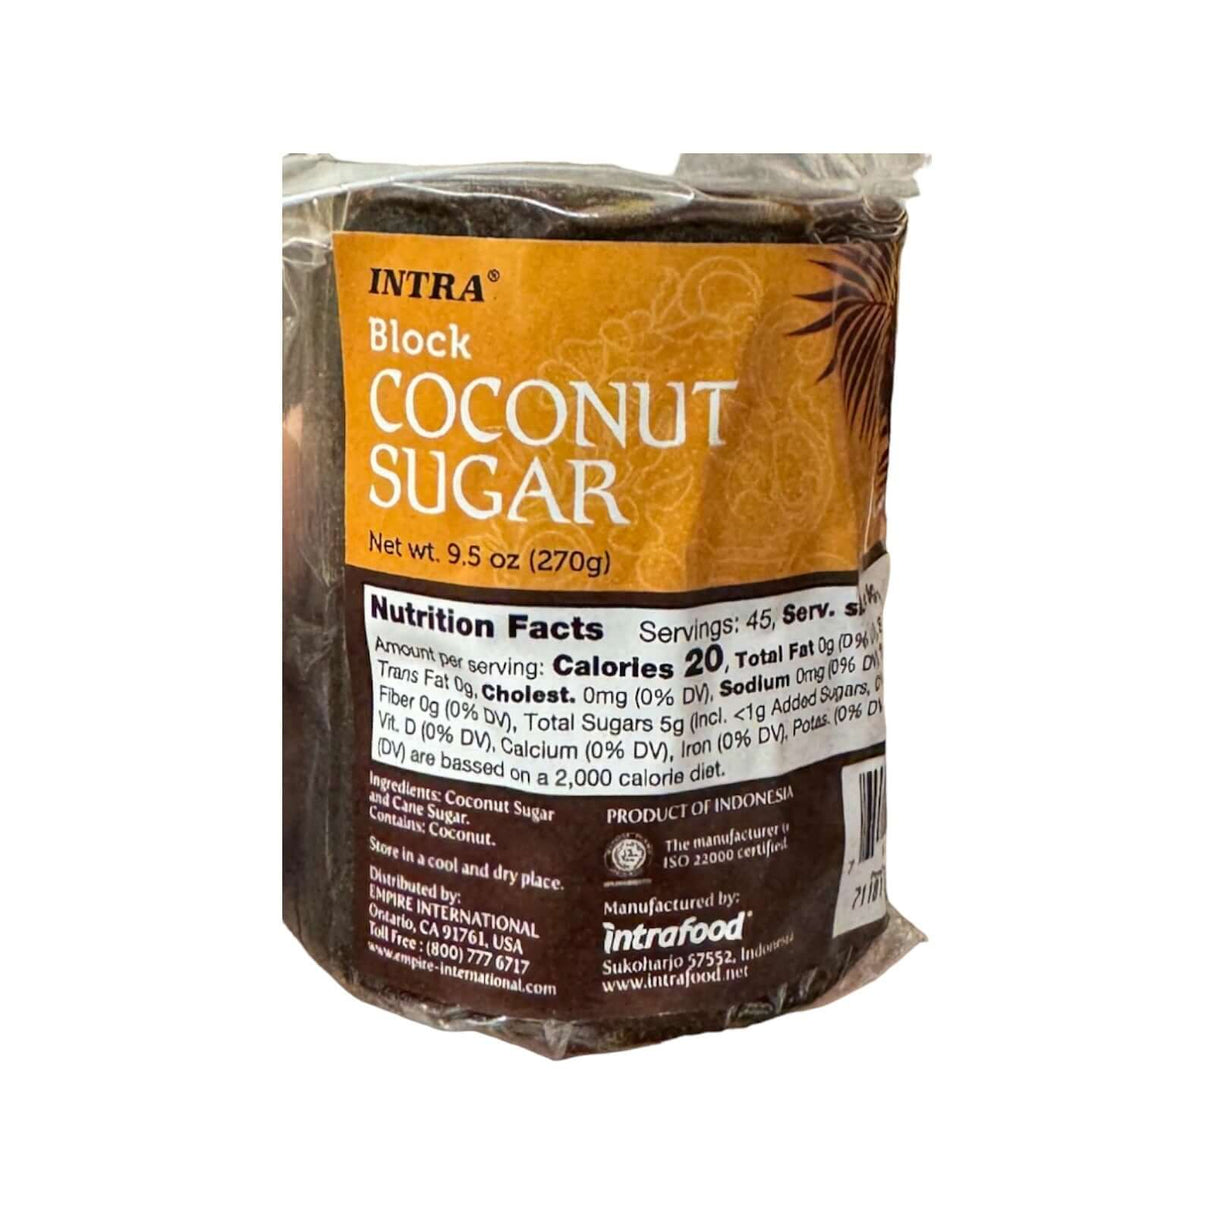 Intra Block Coconut Sugar